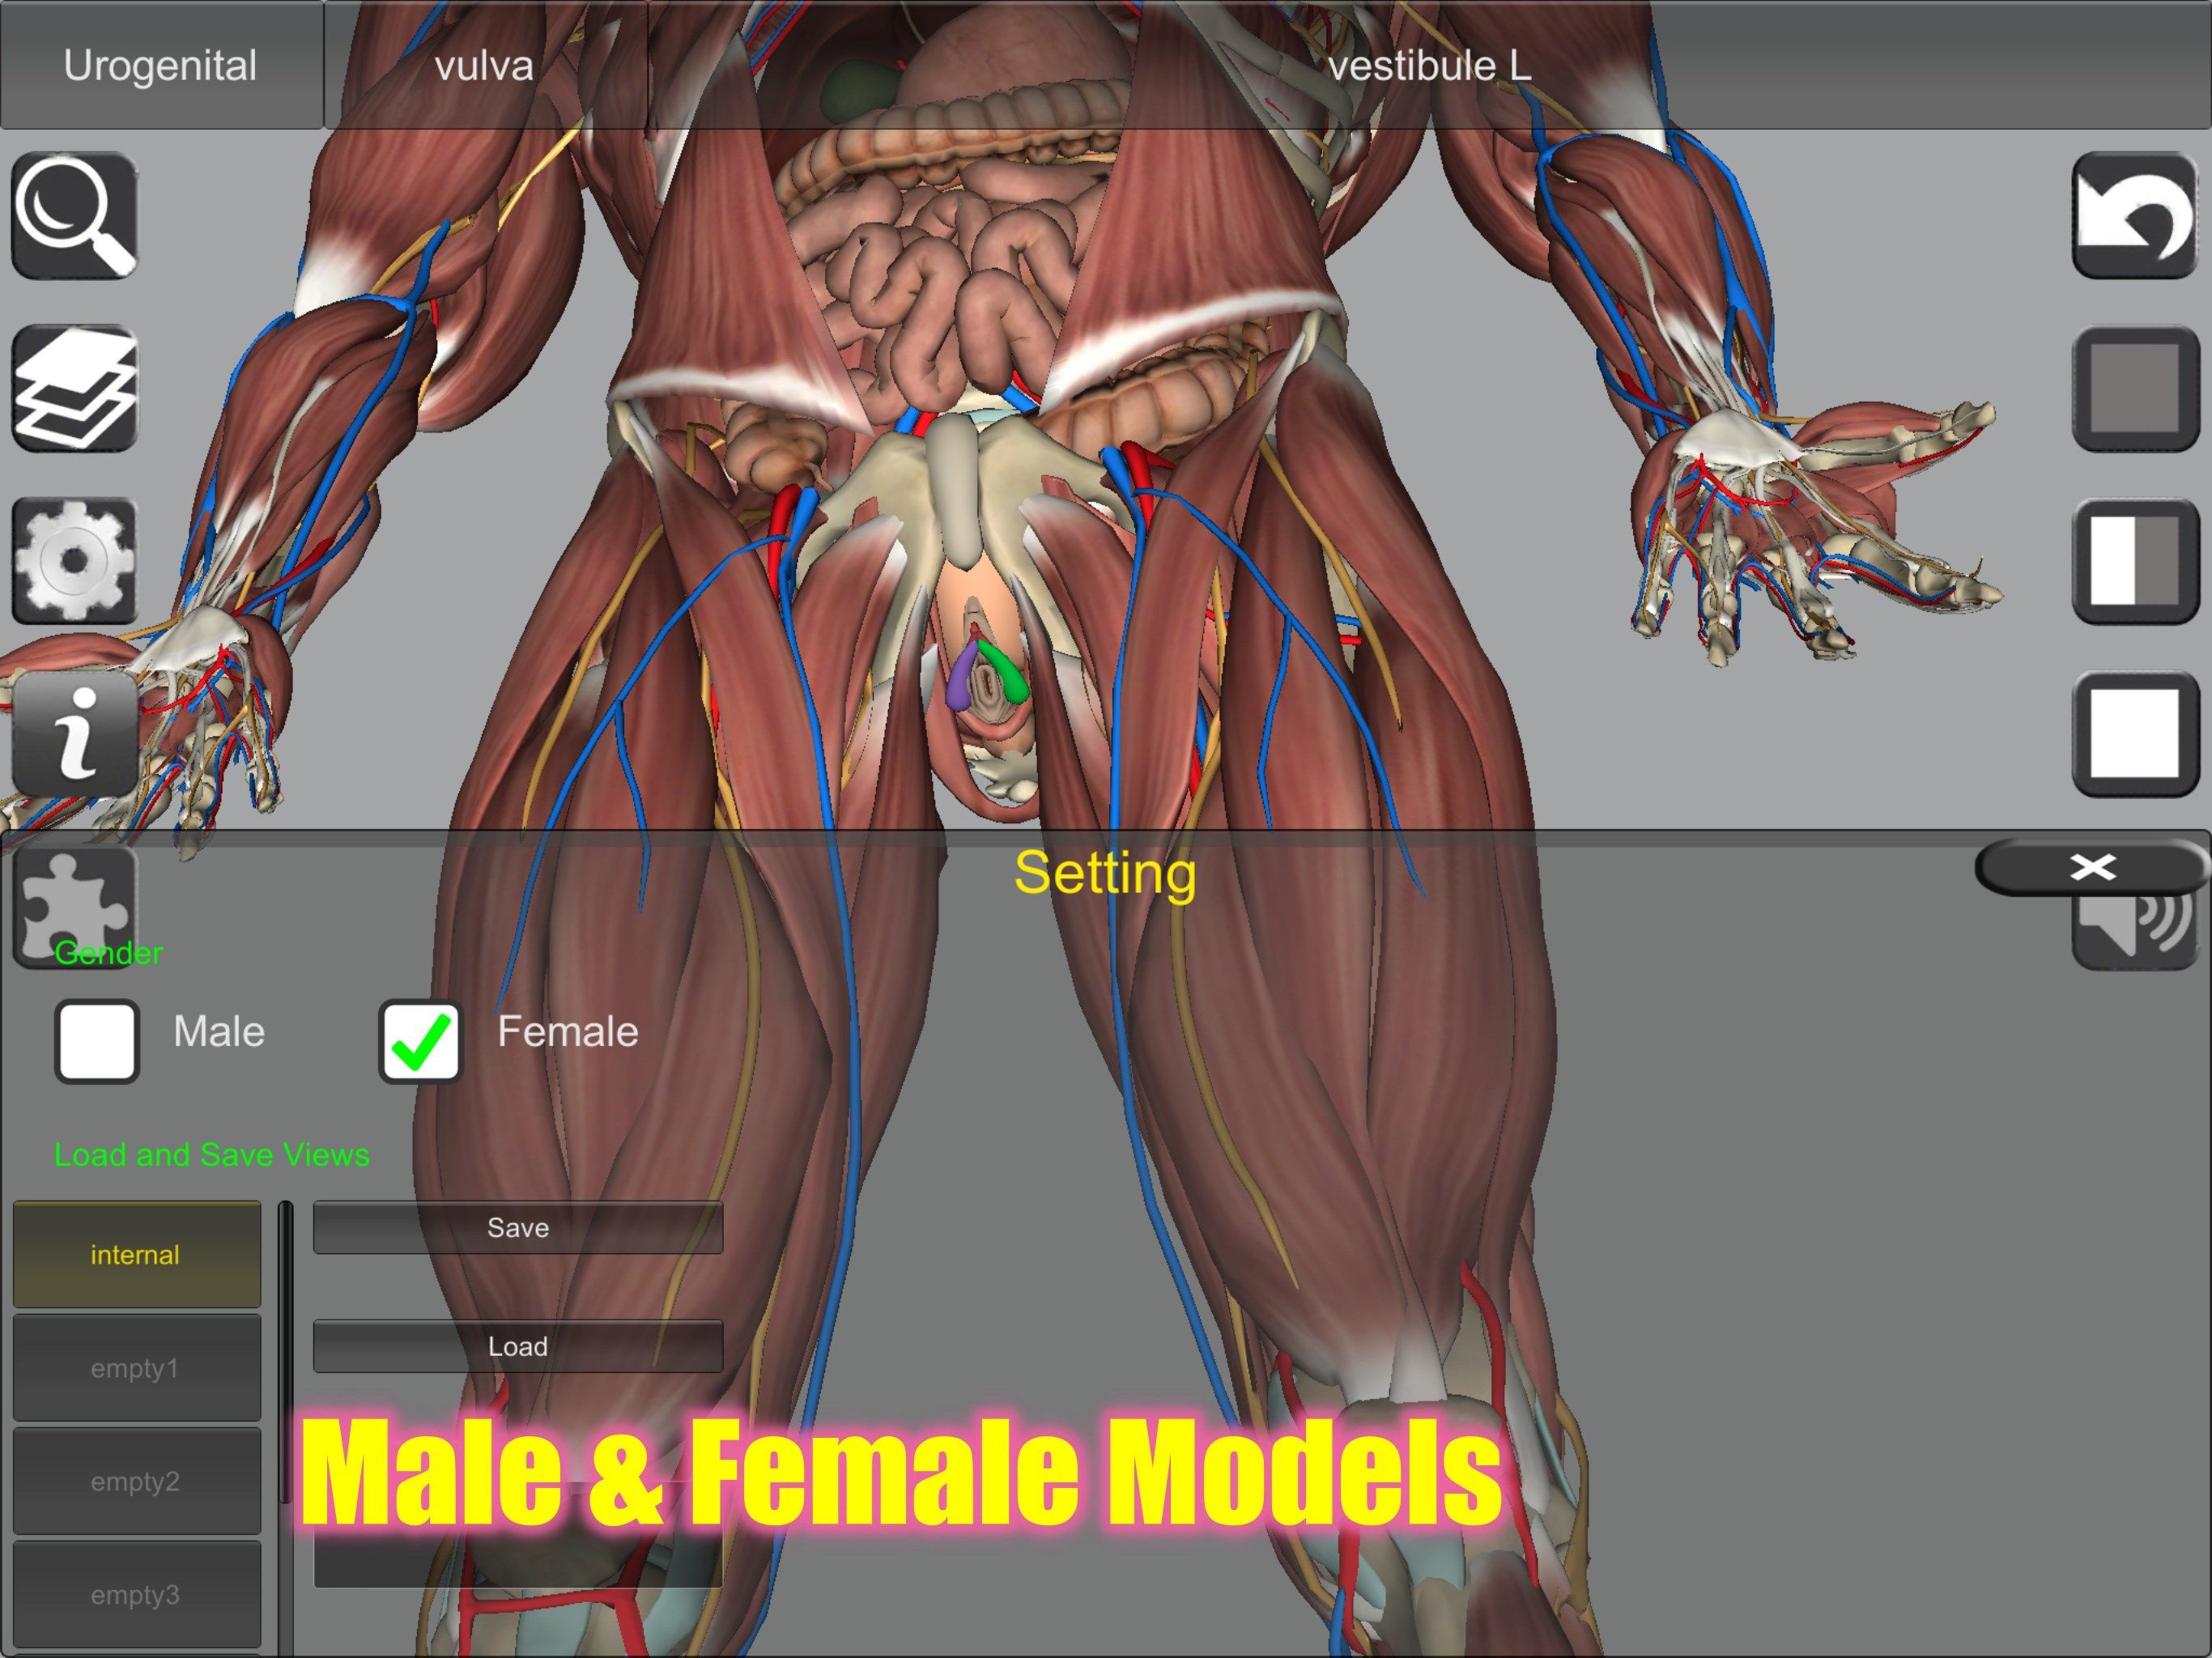 Male & Female models